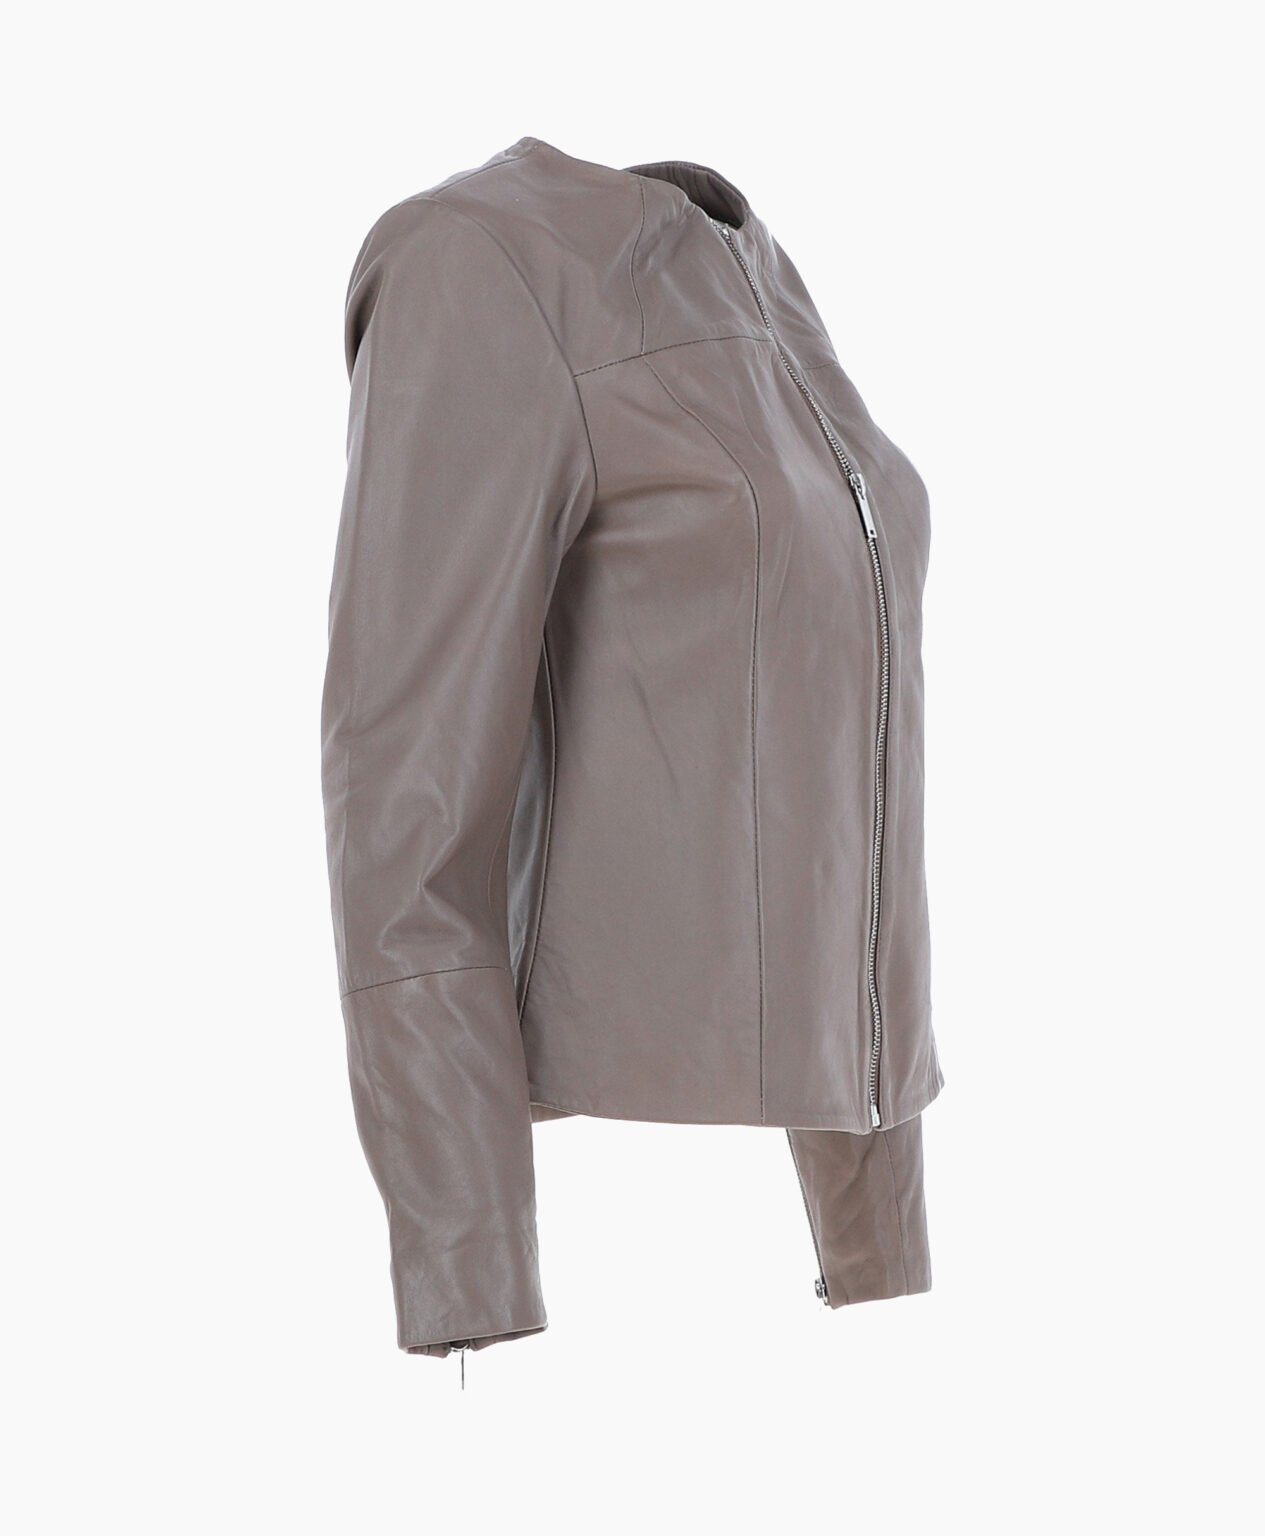 vogue-jacket-leather-fashion-jacket-gray-elizabeth-image203